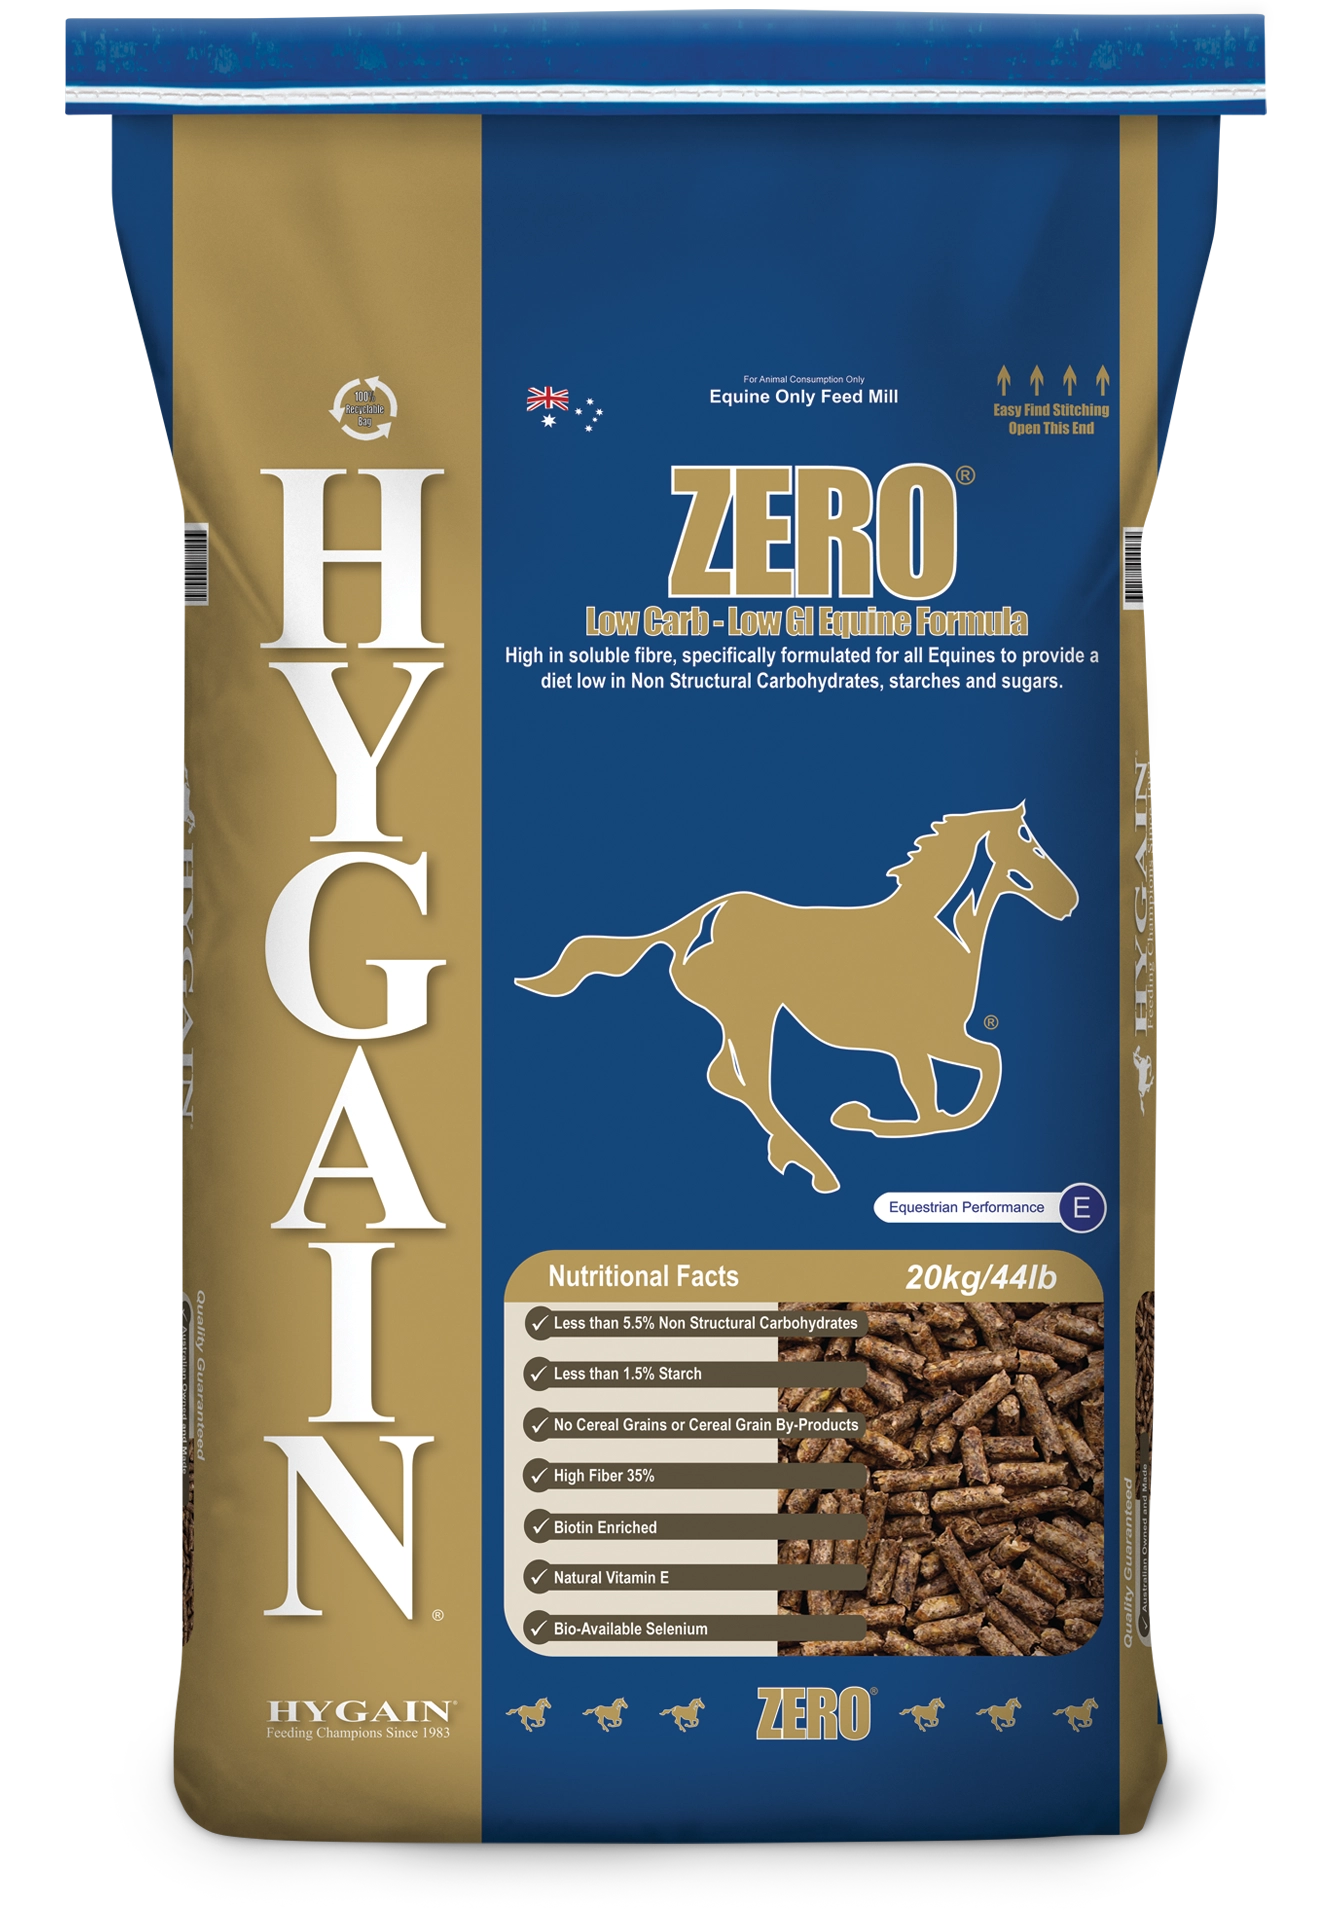 Hygain Zero bag